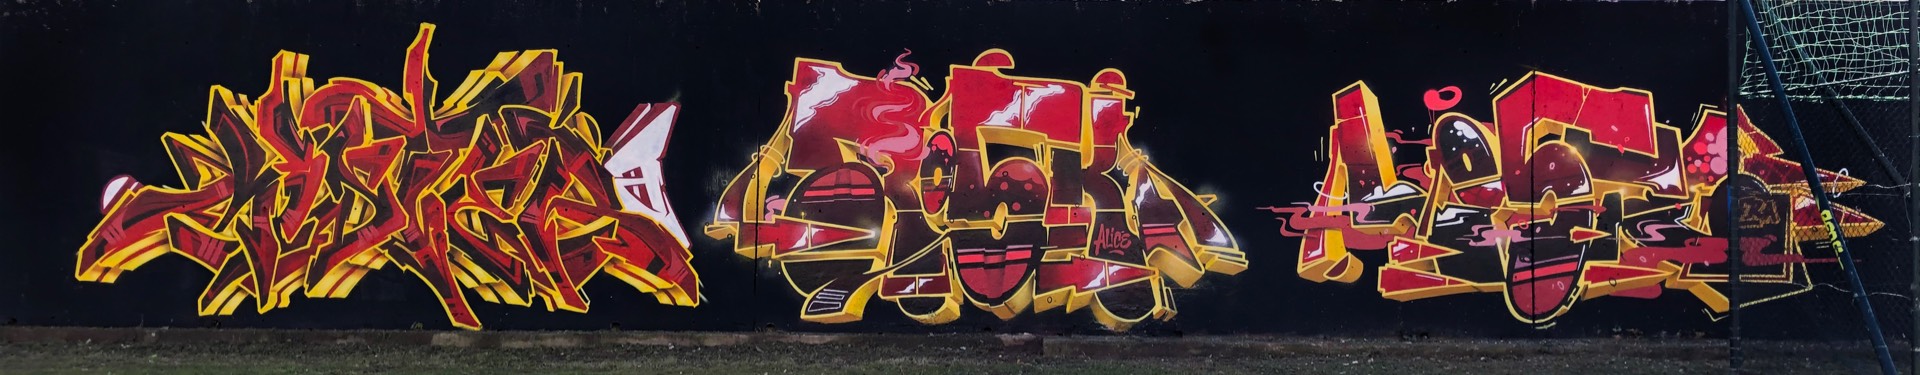 Acker + Rosk + Loste